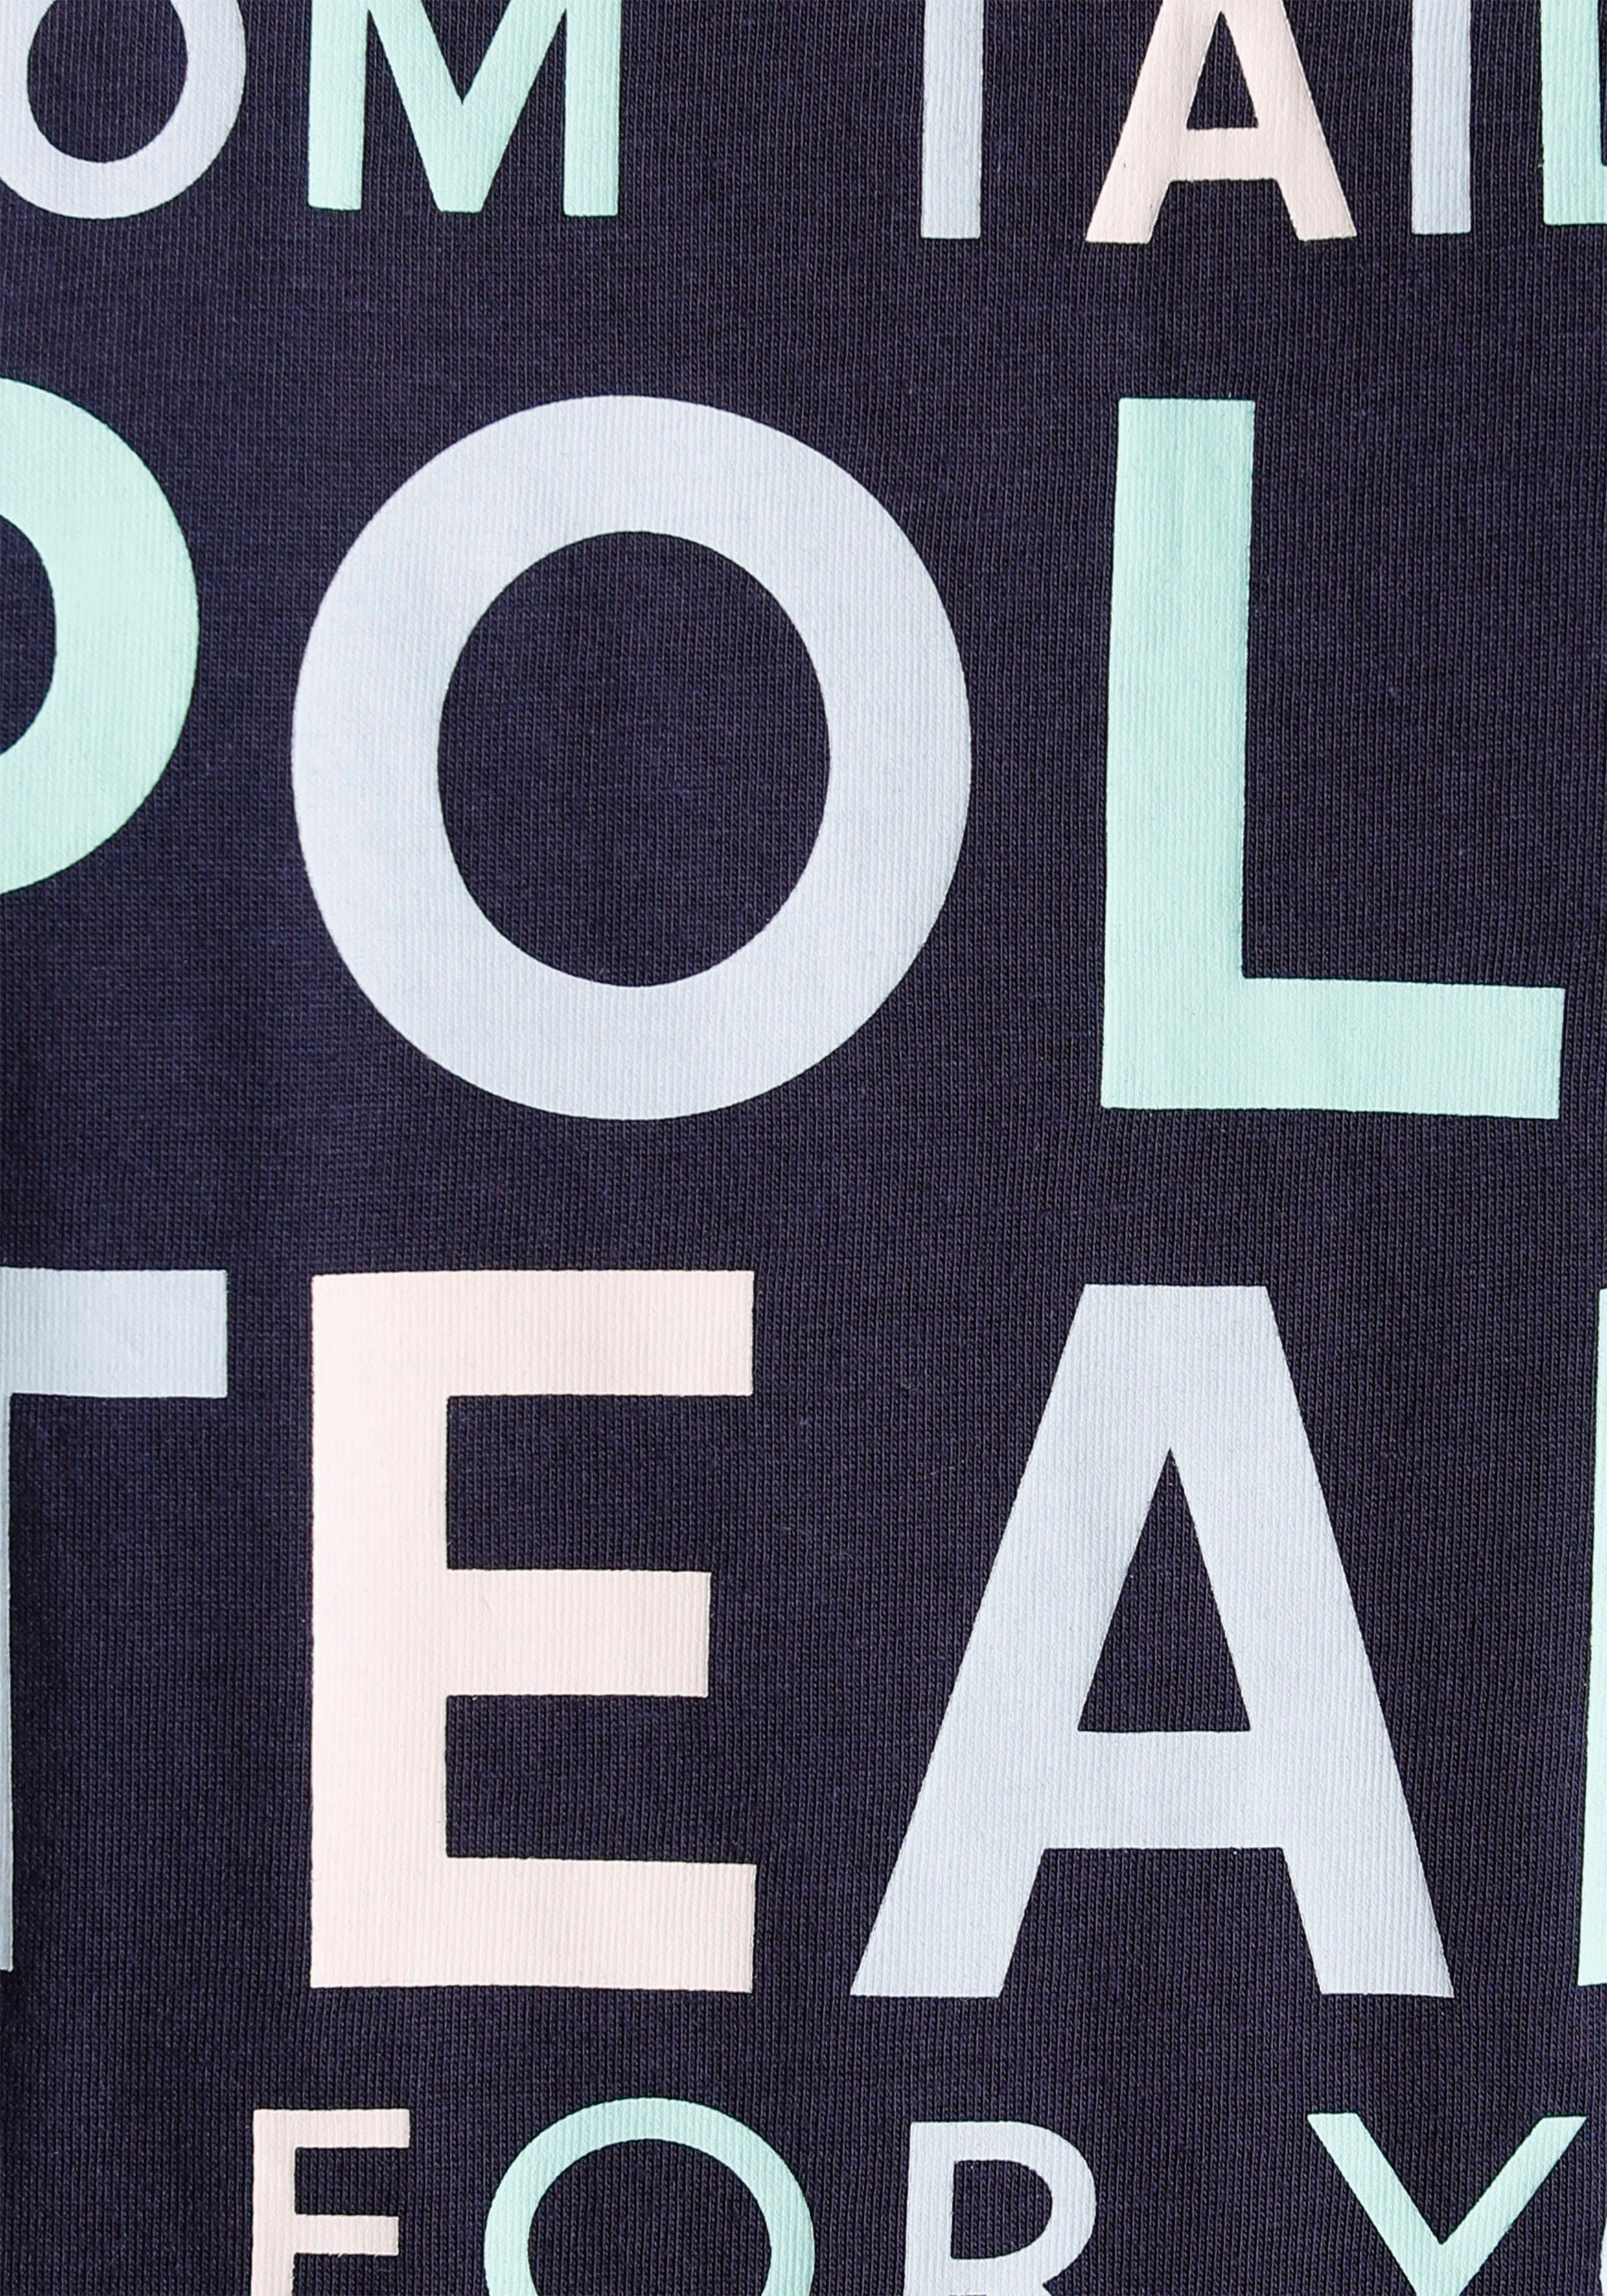 TOM TAILOR Polo Team Print-Shirt Logo-Print großem farbenfrohen